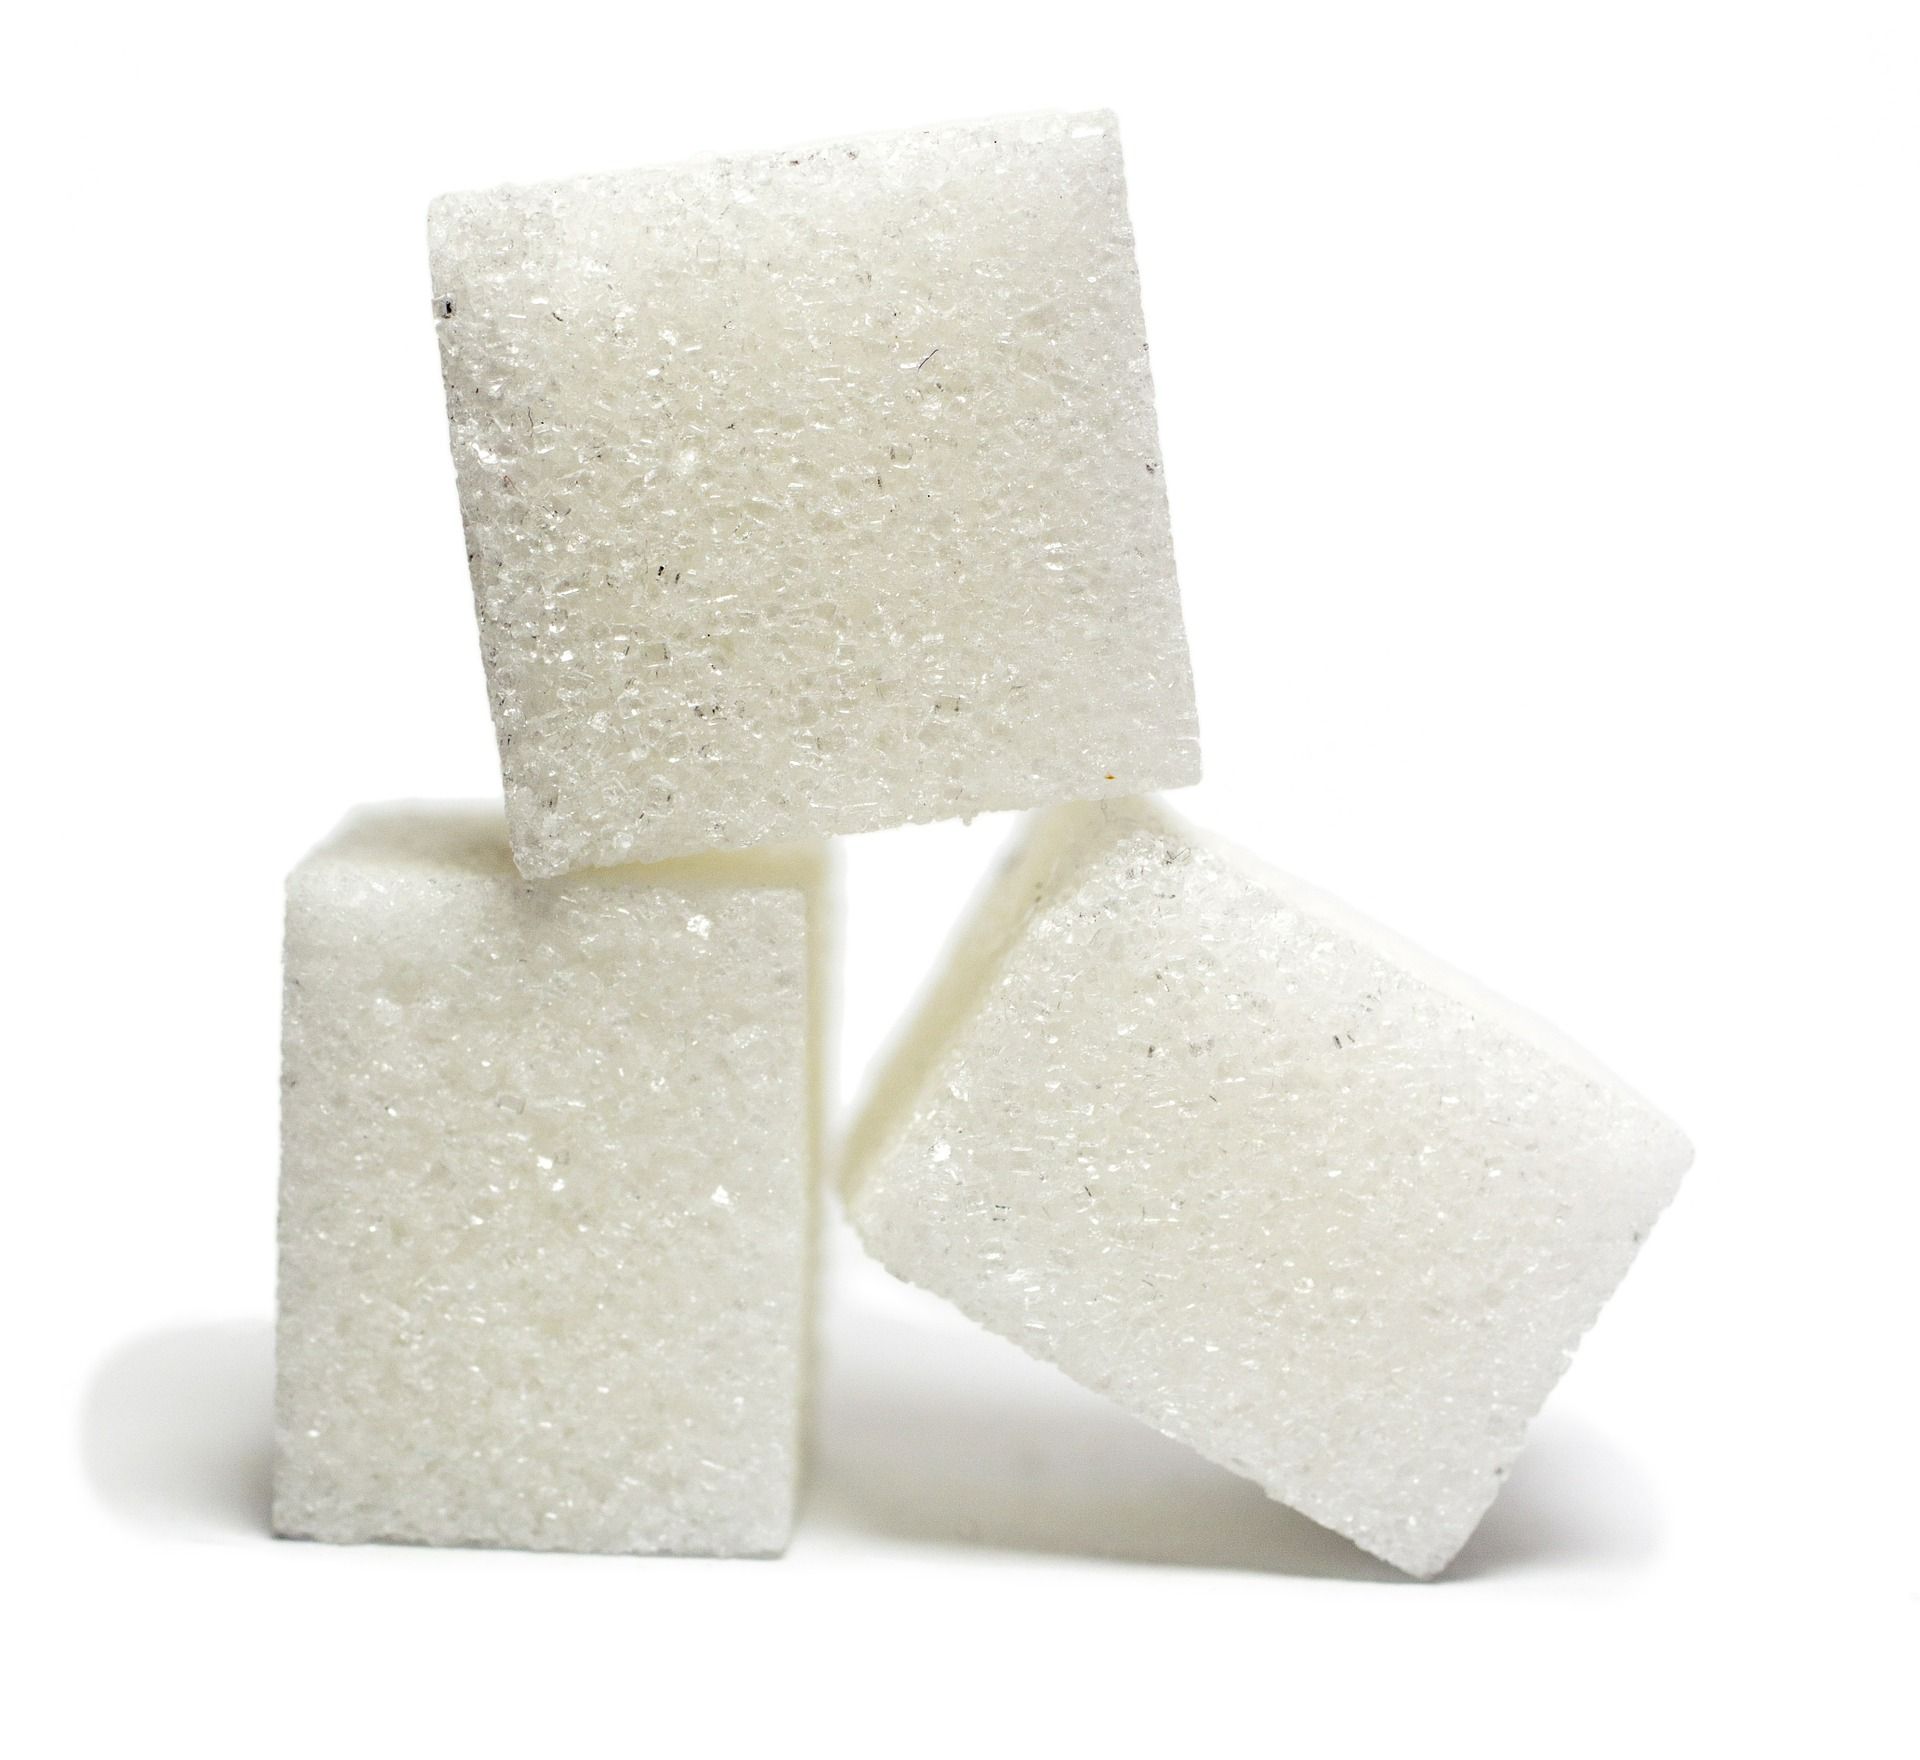 Si tienes problemas con el azúcar y la sal, estos productos de Lidl te encantarán